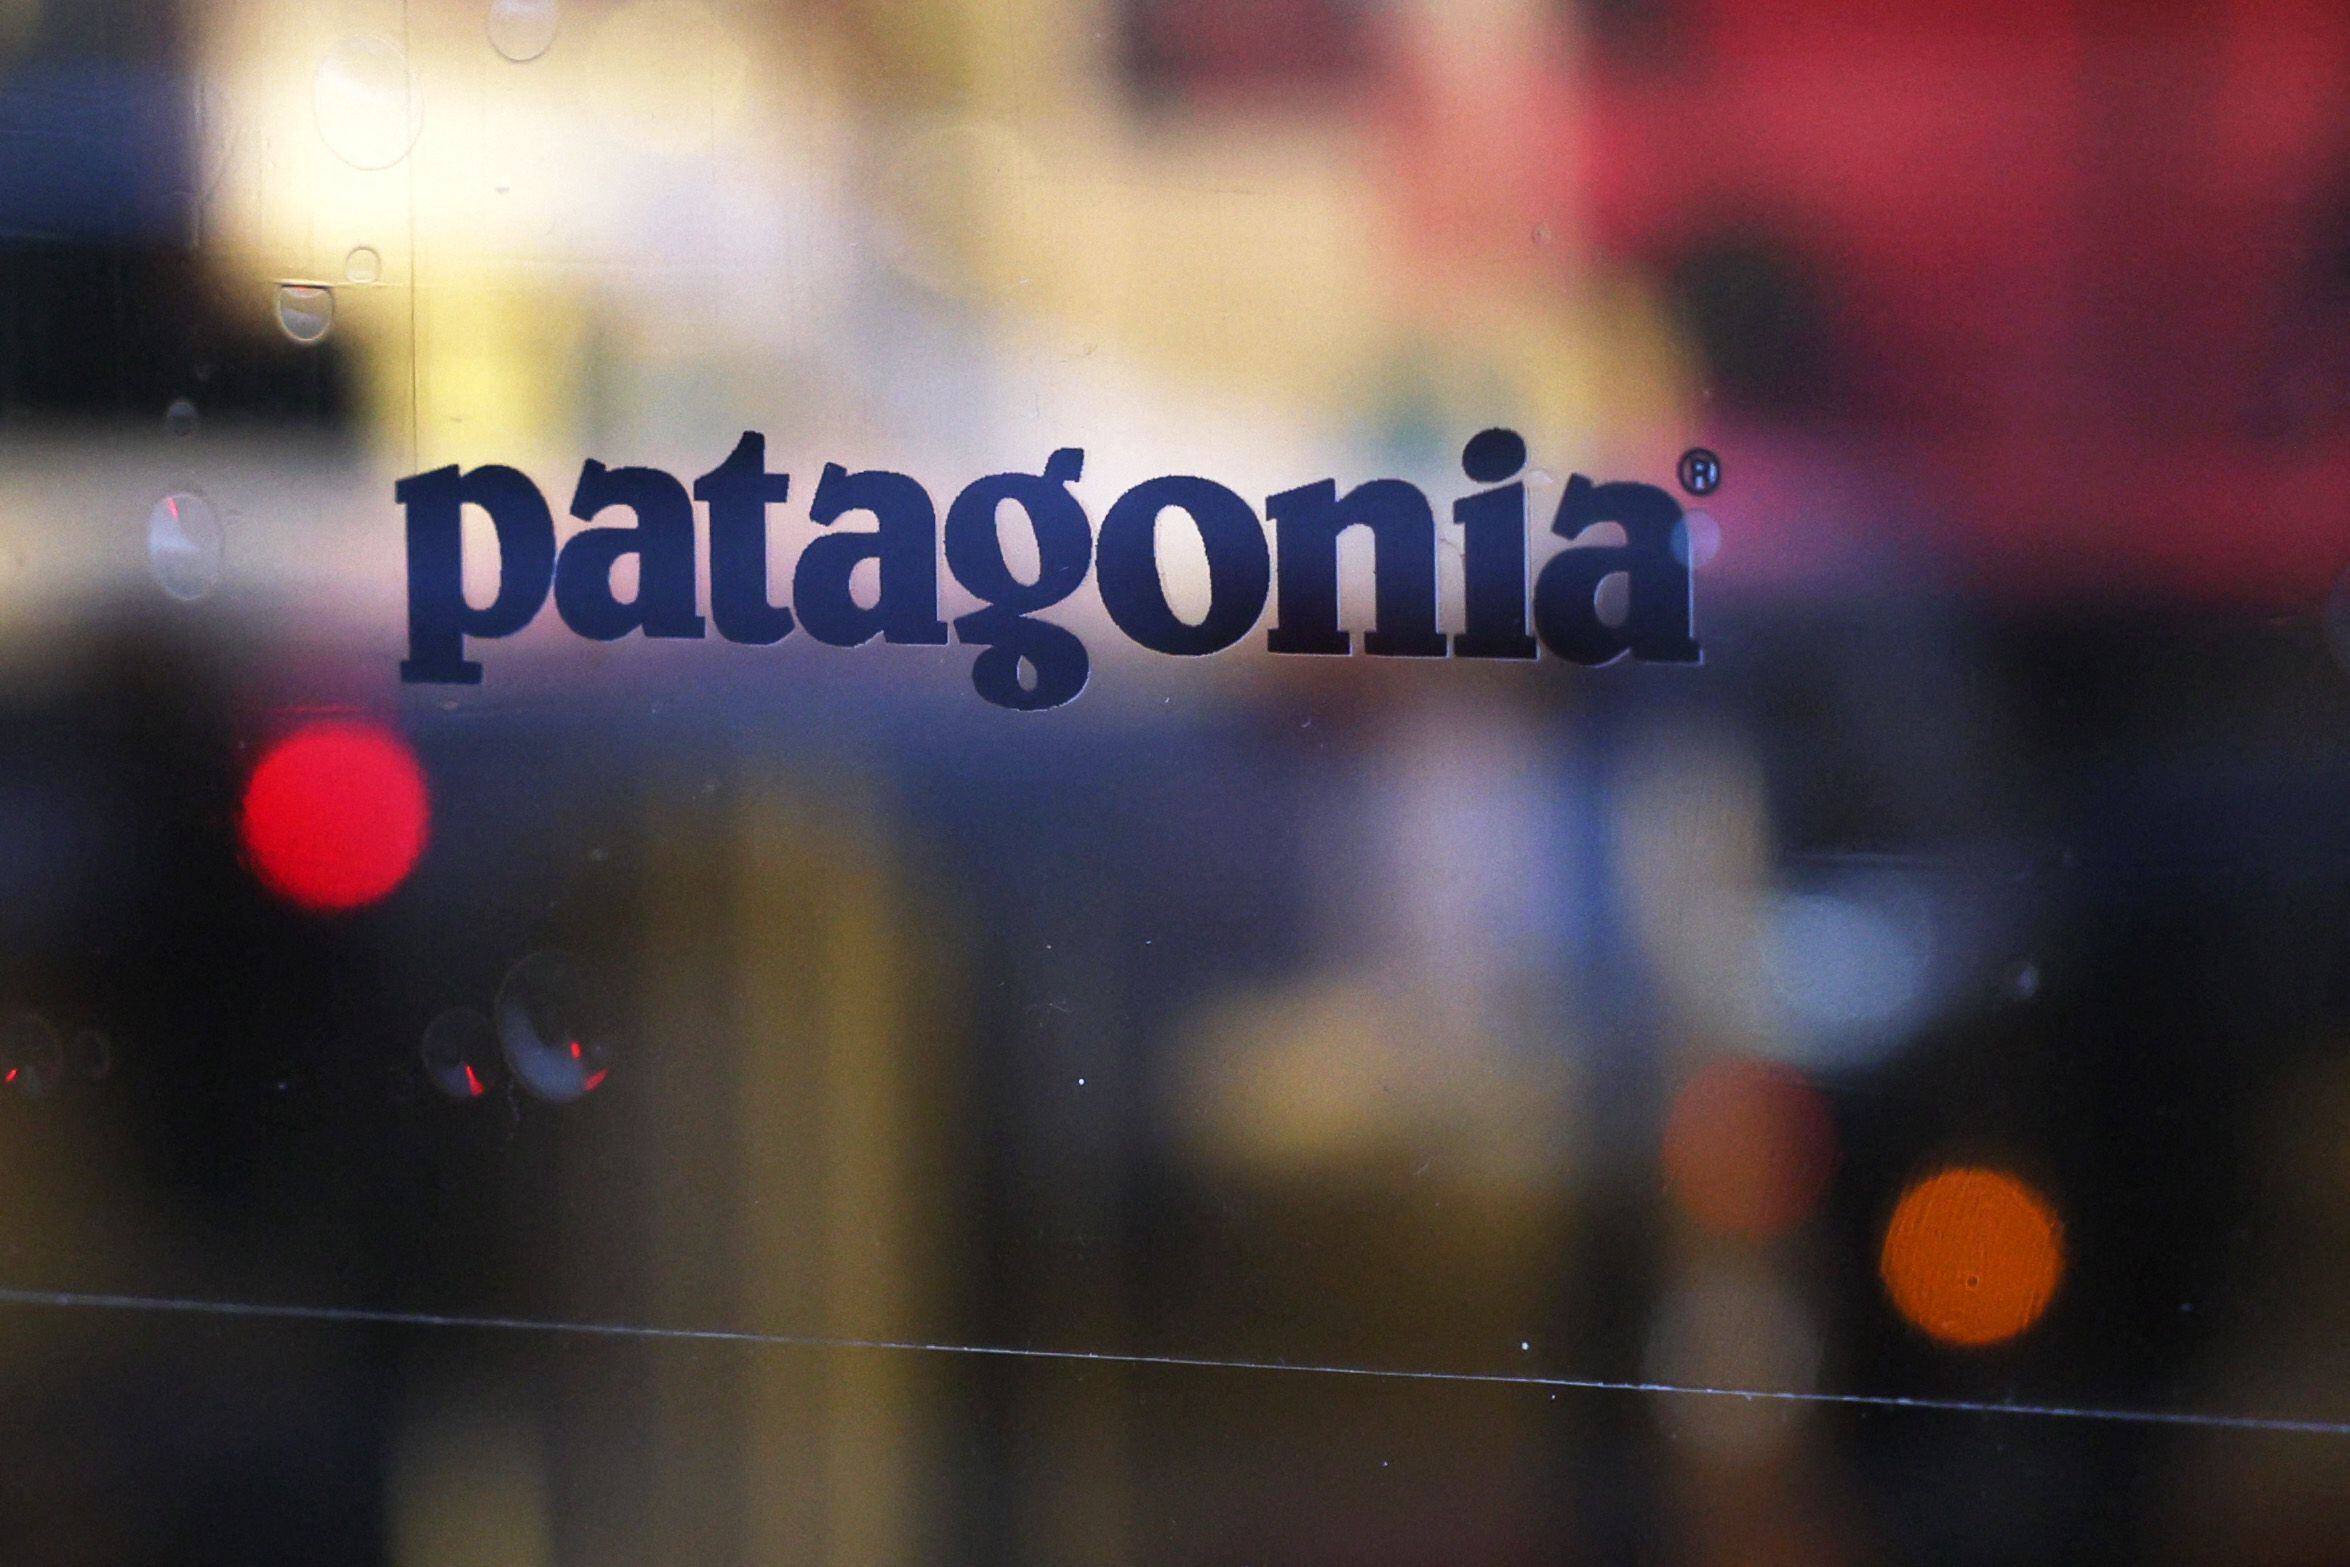 NEW YORK. Fundada hace unos 50 años, Patagonia se comprometió en a favor de la protección del medioambiente, eligiendo con cuidado sus materias primas o donando 1% de sus ventas cada año a oenegés medioambientales. Un logotipo de la marca en el cristal de la tienda en la ciudad de Nueva York.